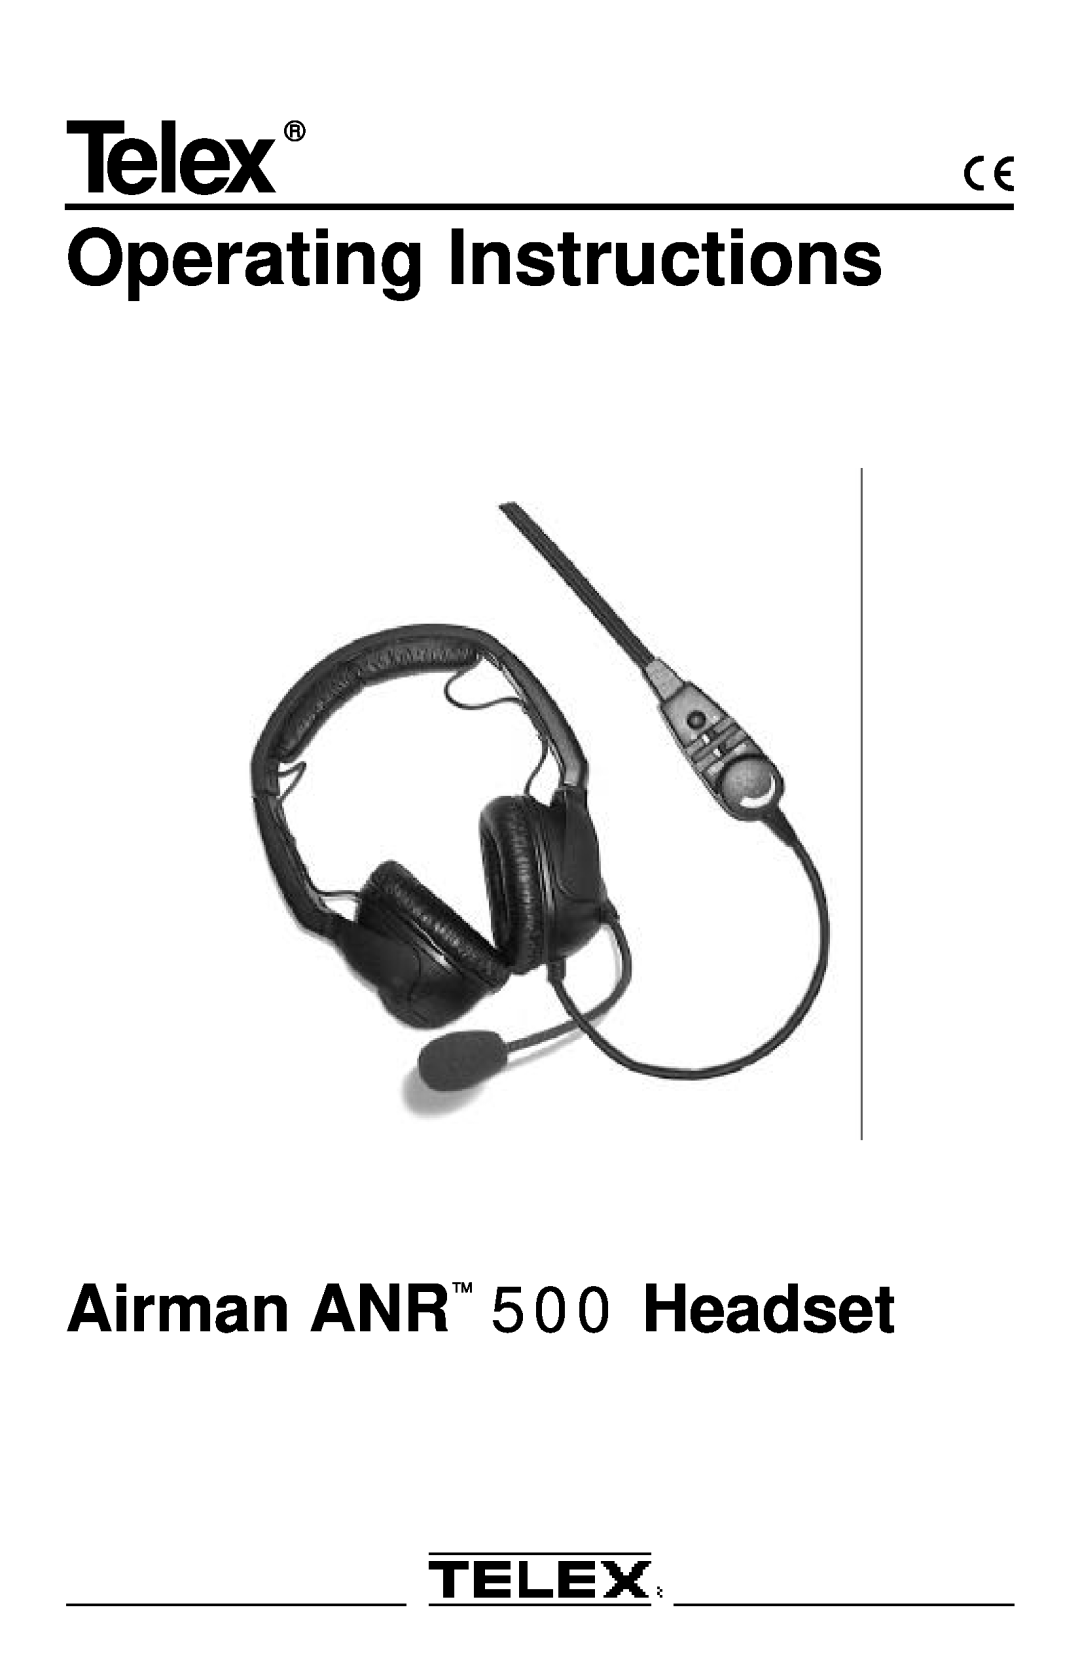 Telex ANR TM 500 operating instructions Telex, Operating Instructions, Airman ANR 500 Headset 